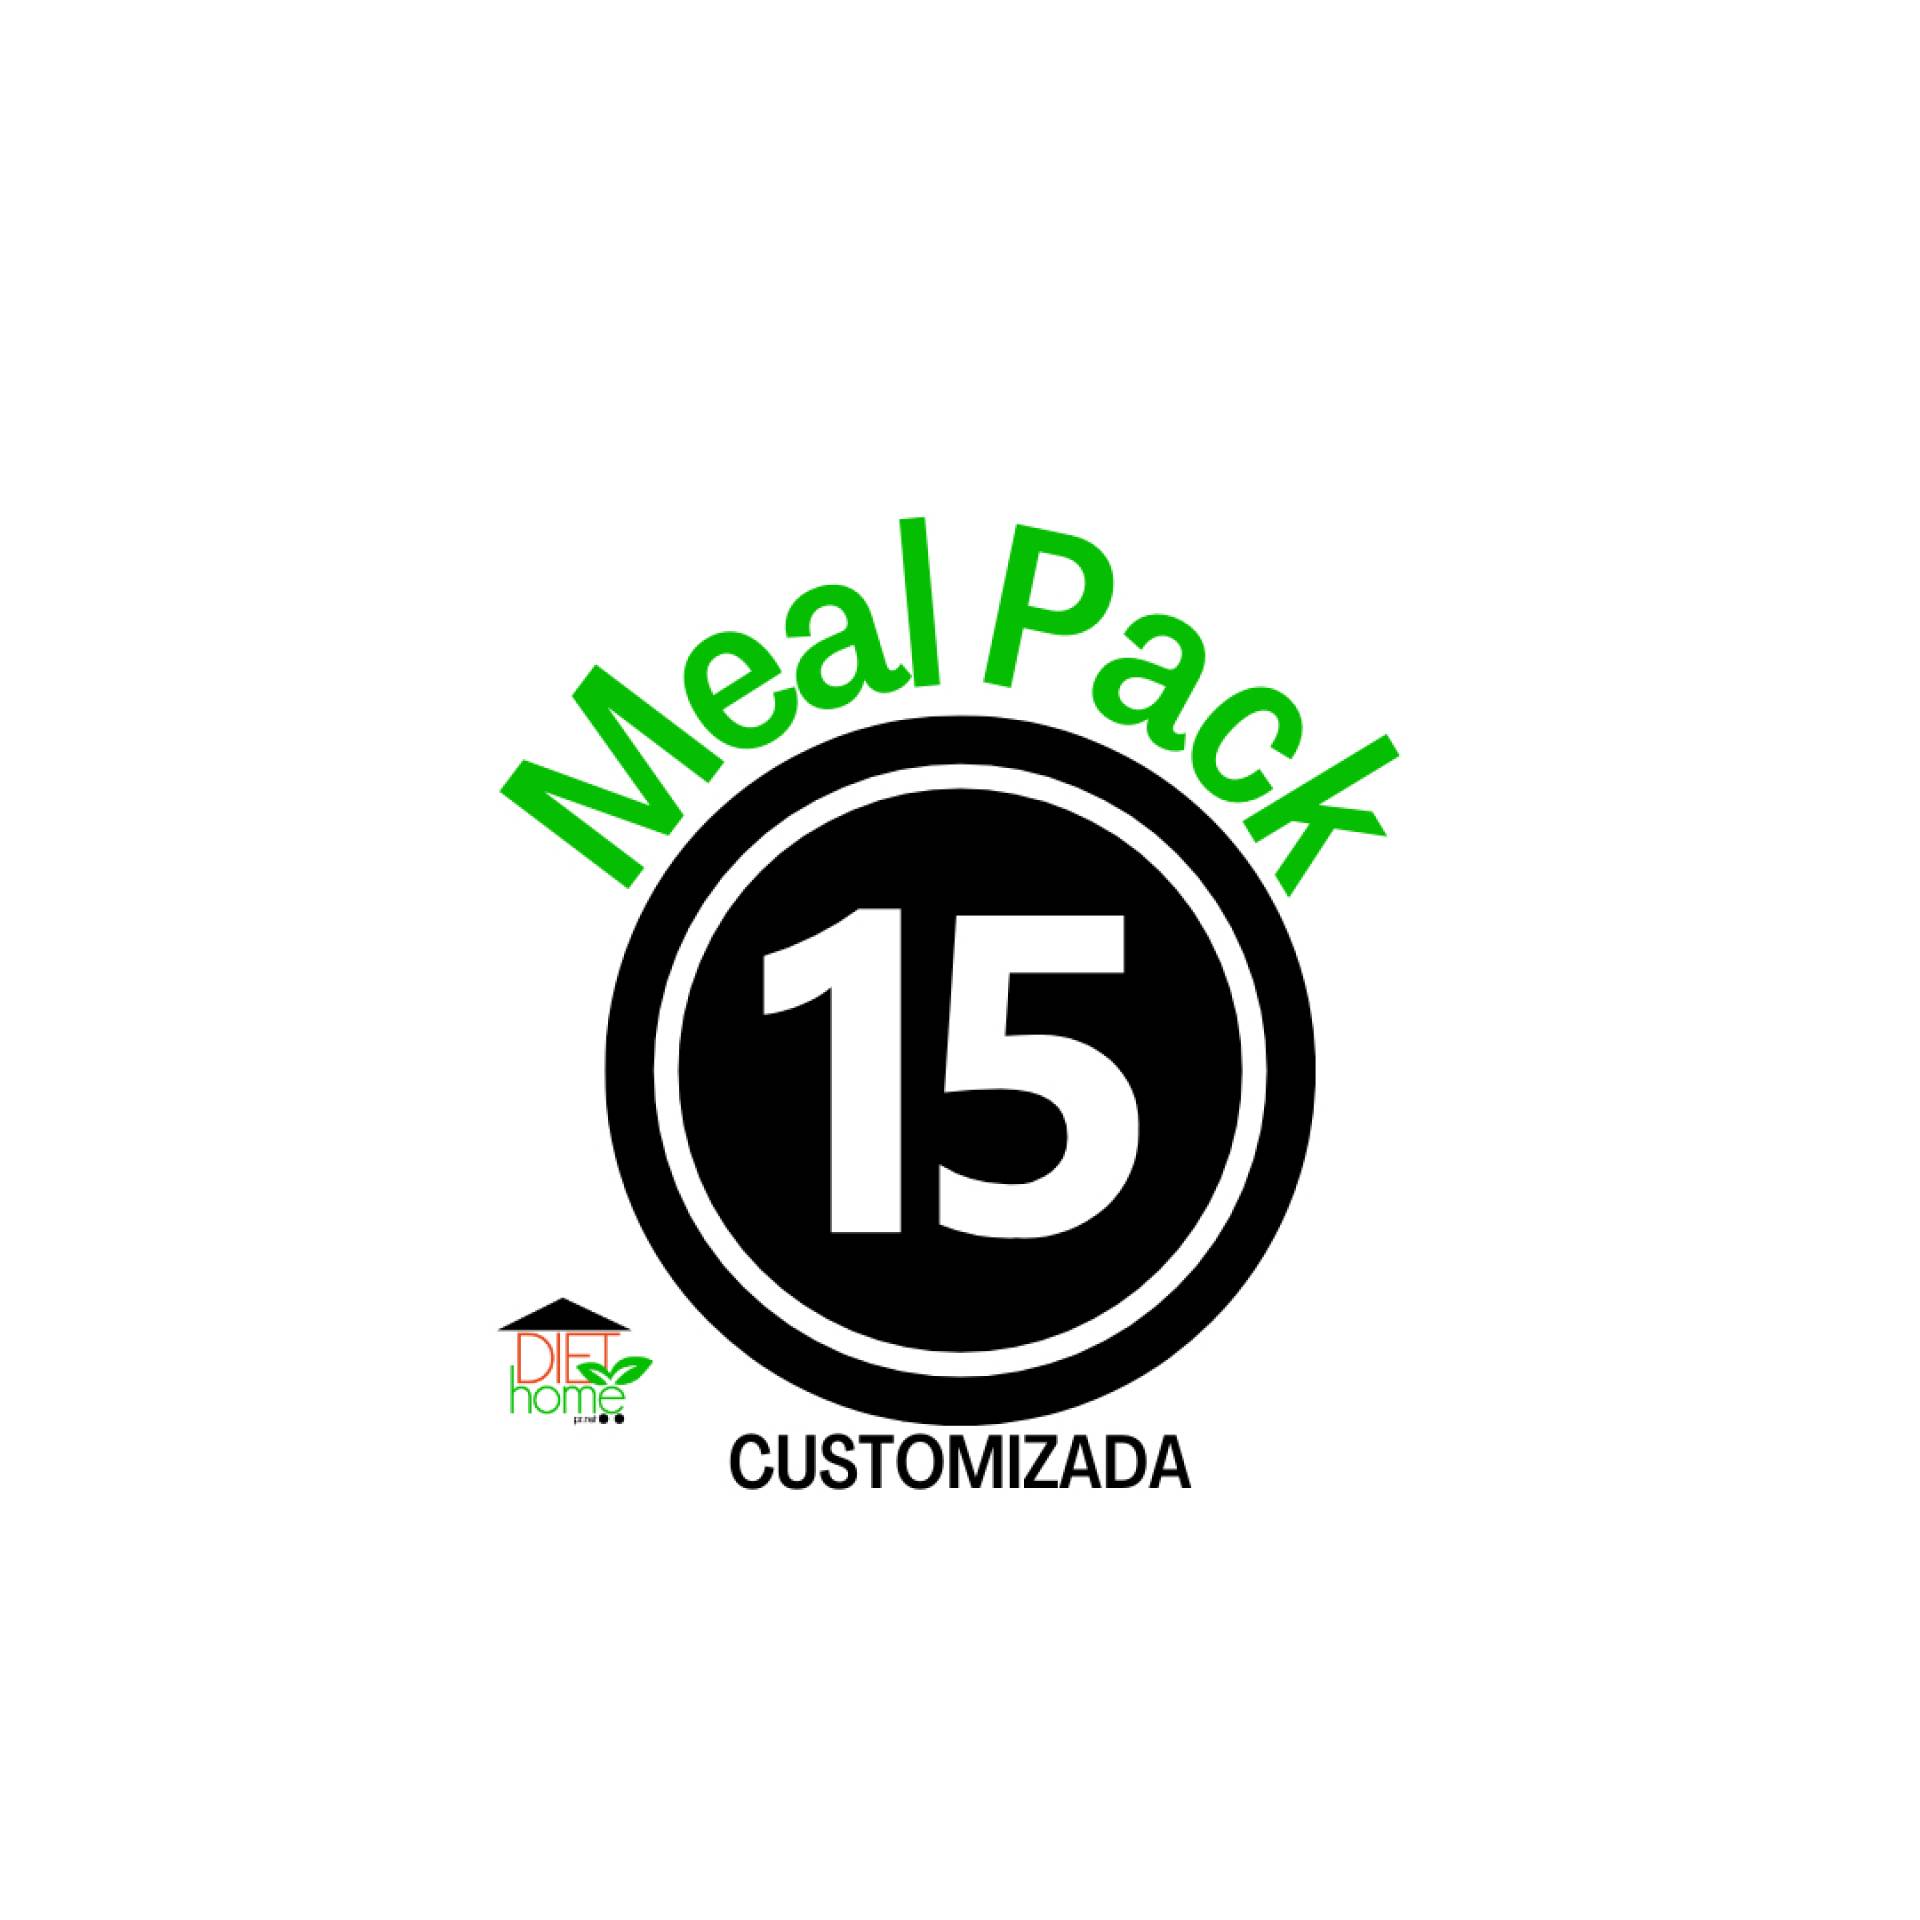 *15 Meal Pack Customizada